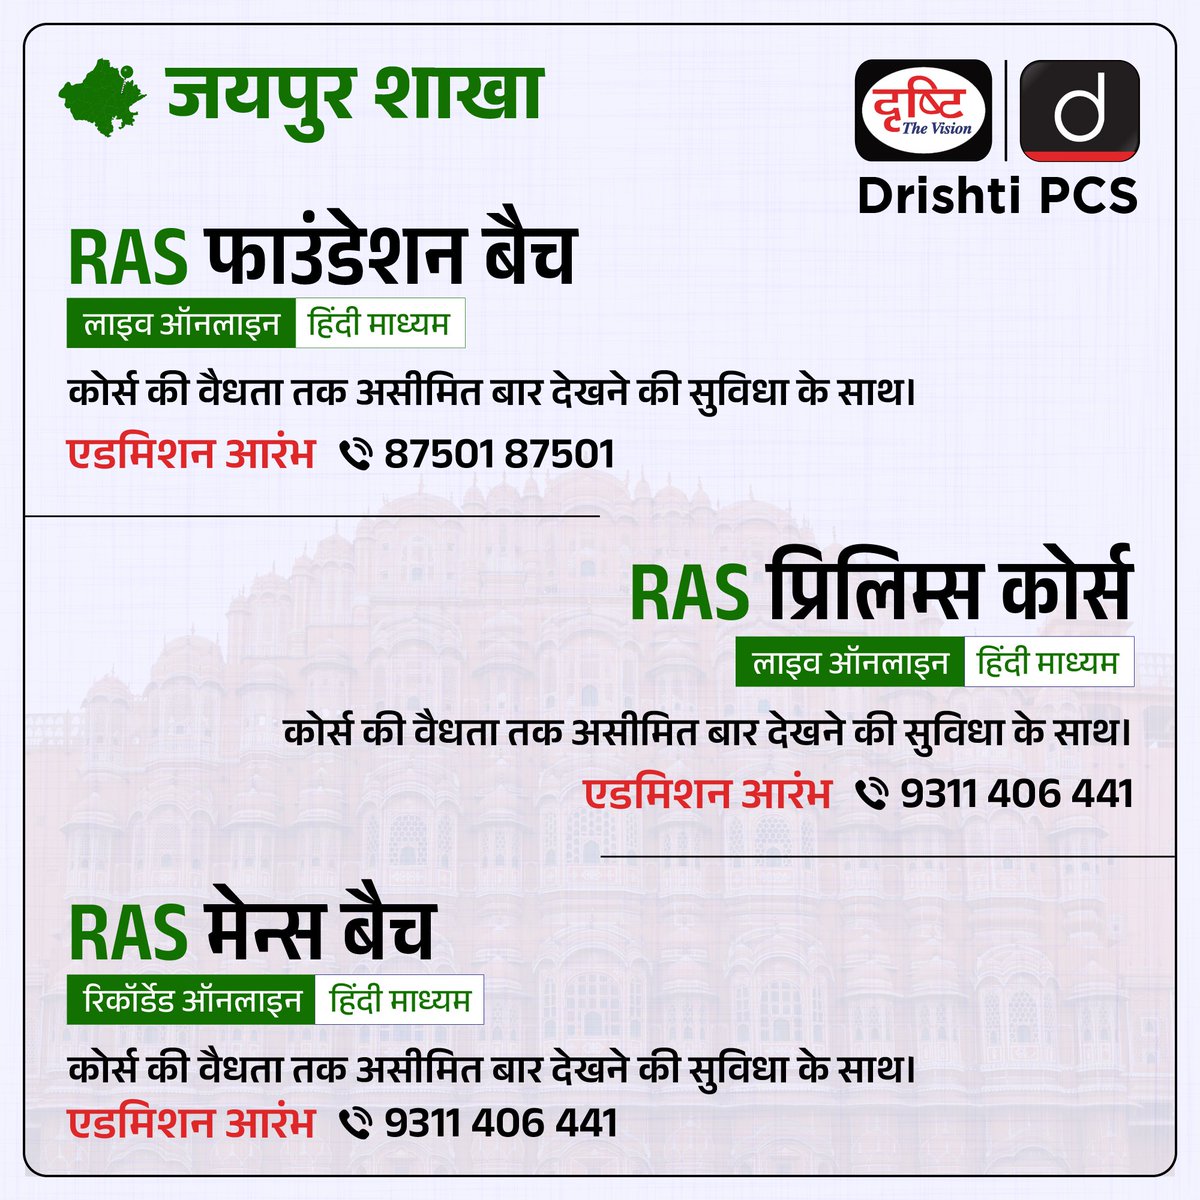 RAS के लाइव ऑनलाइन कोर्सेज़

एडमिशन ओपन

कोर्स से संबंधित विस्तृत जानकारी या एडमिशन के लिये क्लिक करें इस लिंक पर: drishti.xyz/Hindi-Online-C…

अथवा संपर्क करें: 9311406441, 87501-87501

#RAS #FoundationCourse #OnlineCourse #GS #Mains #CivilServices #Jaipur #DrishtiIAS #DrishtiPCS